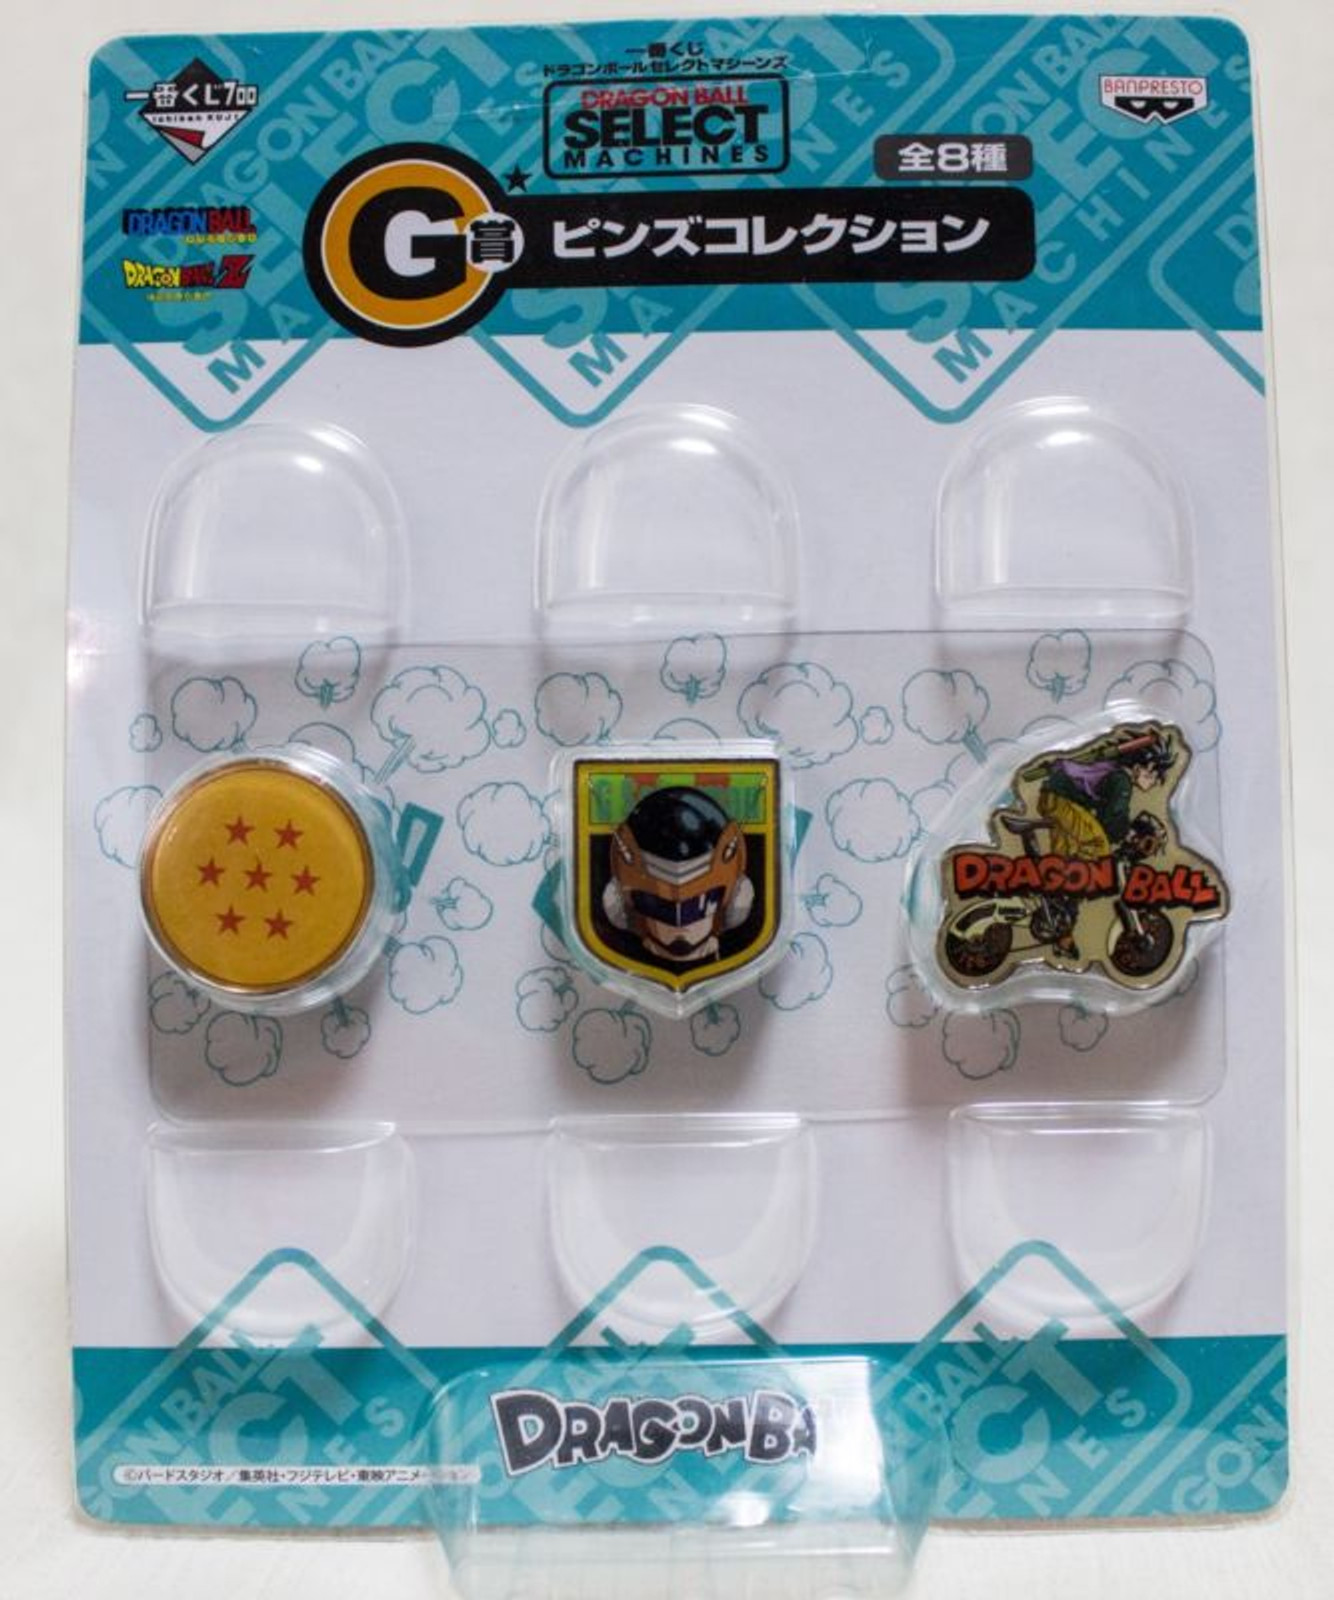 Dragon Ball Z Select Machines Prize G Pins Banpresto 7 JAPAN ANIME MANGA